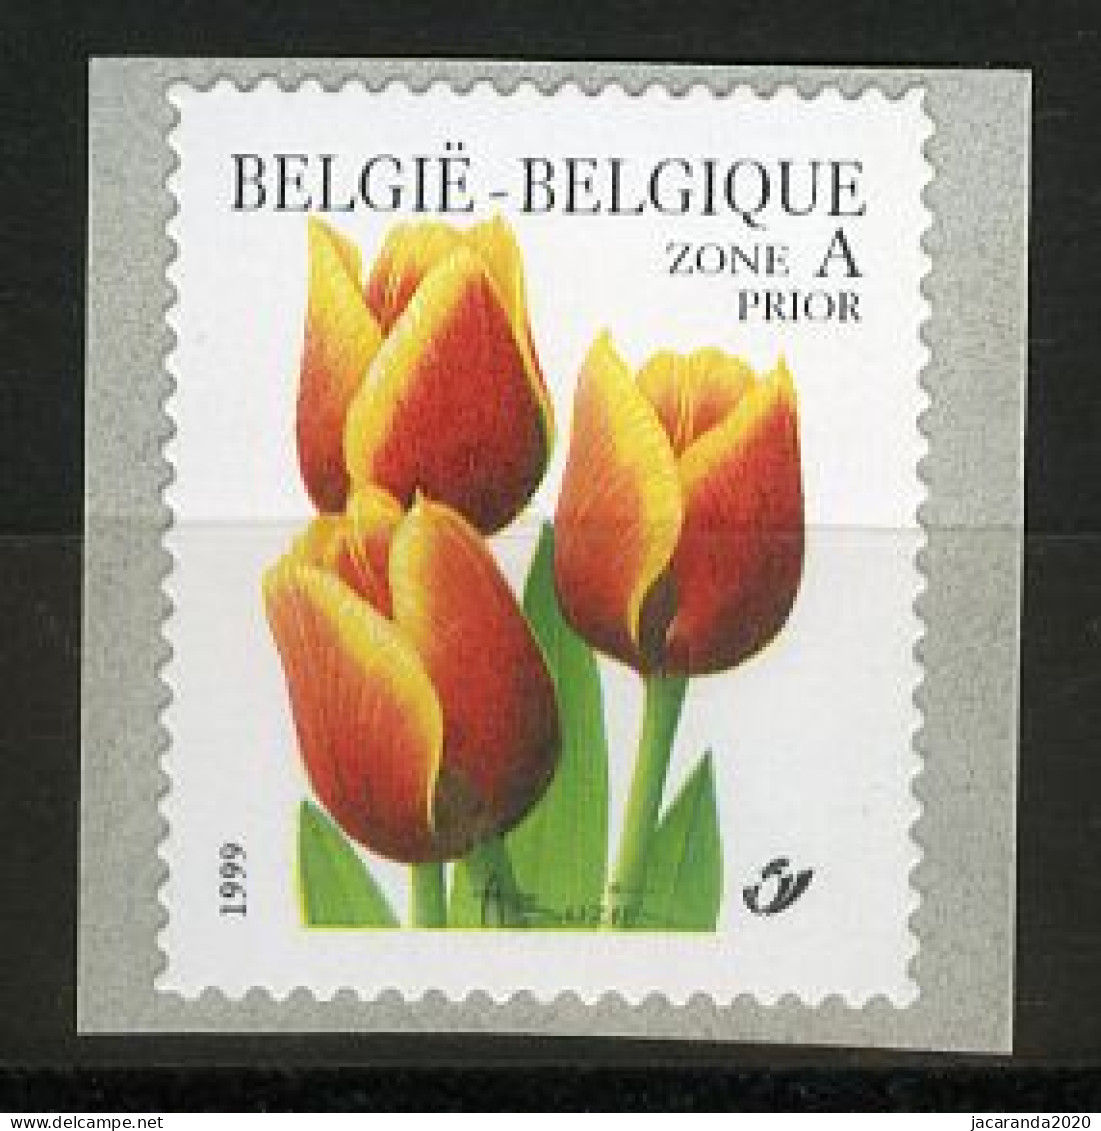 België R92 - Bloemen - André Buzin (2855) - Tulp - Rolzegel - Timbre Rouleau - Rollen